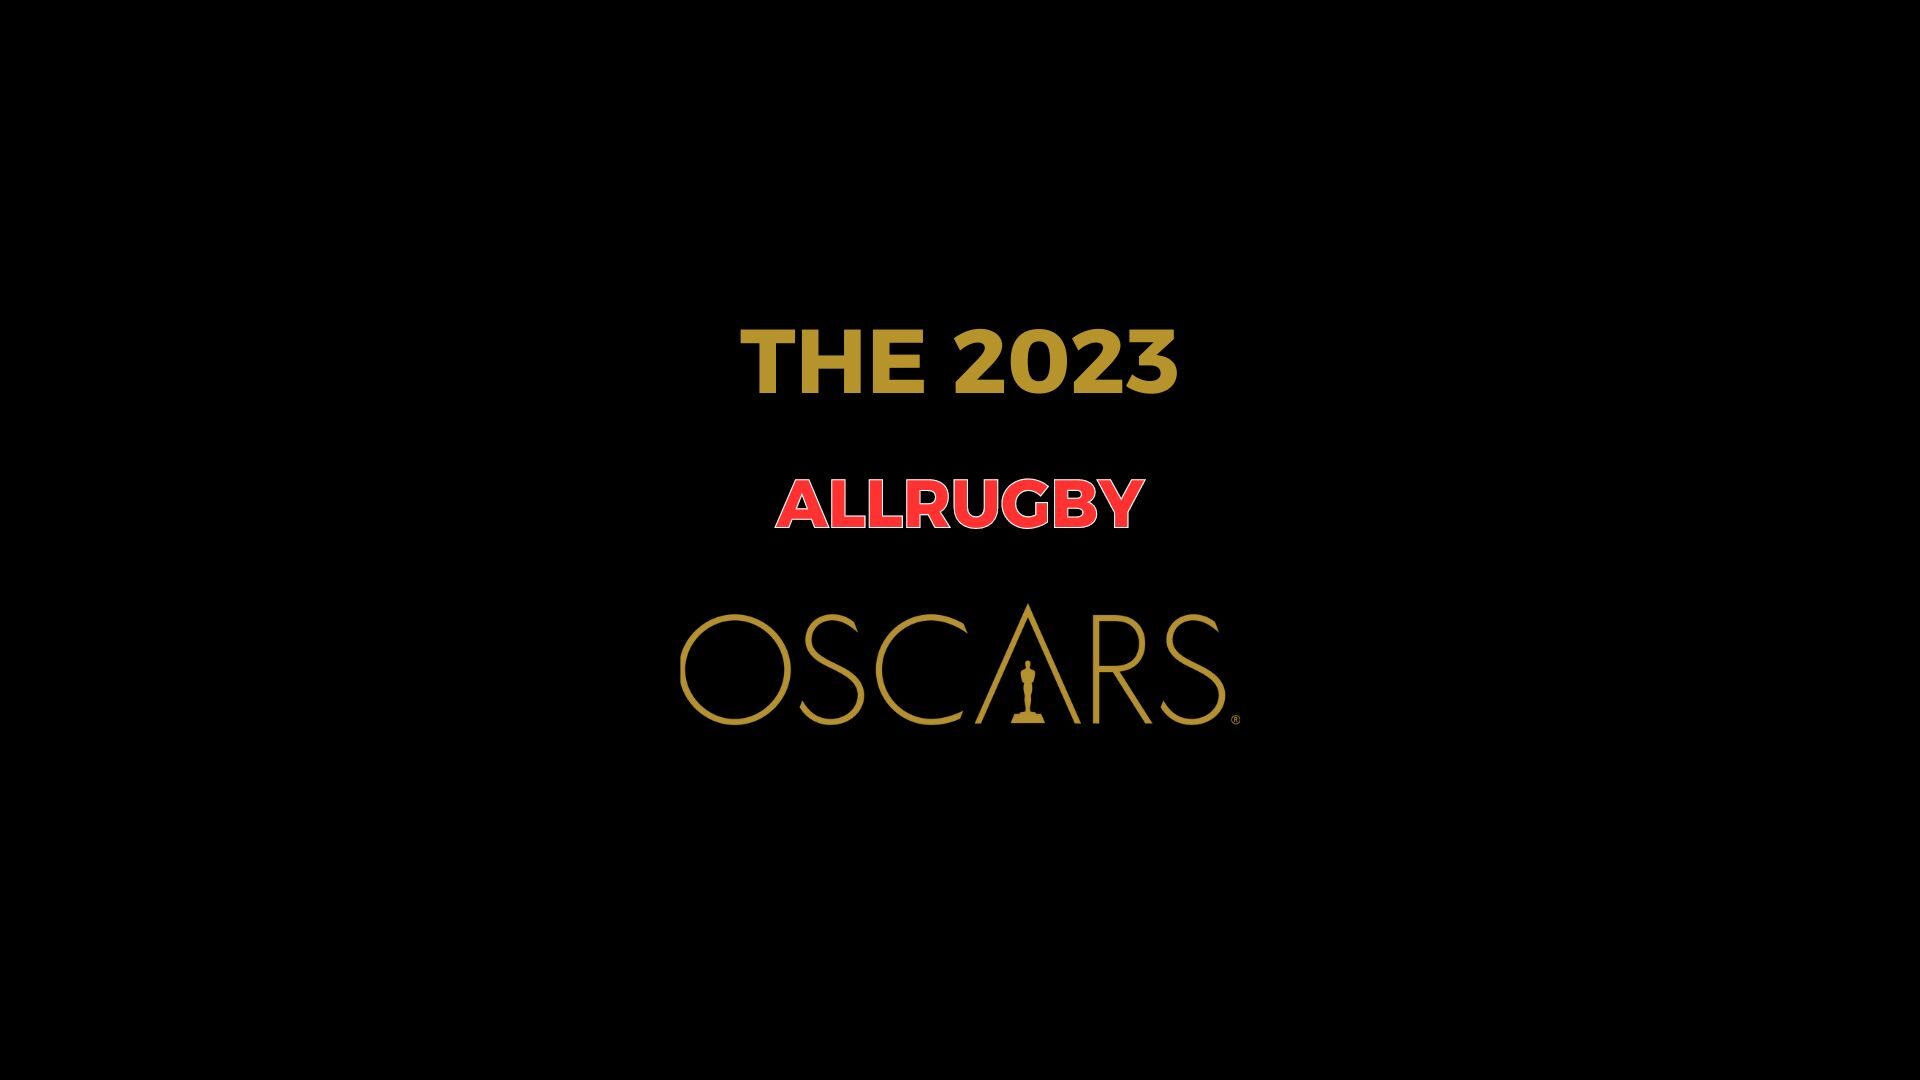 THE 2023 ALLRUGBY OSCARS